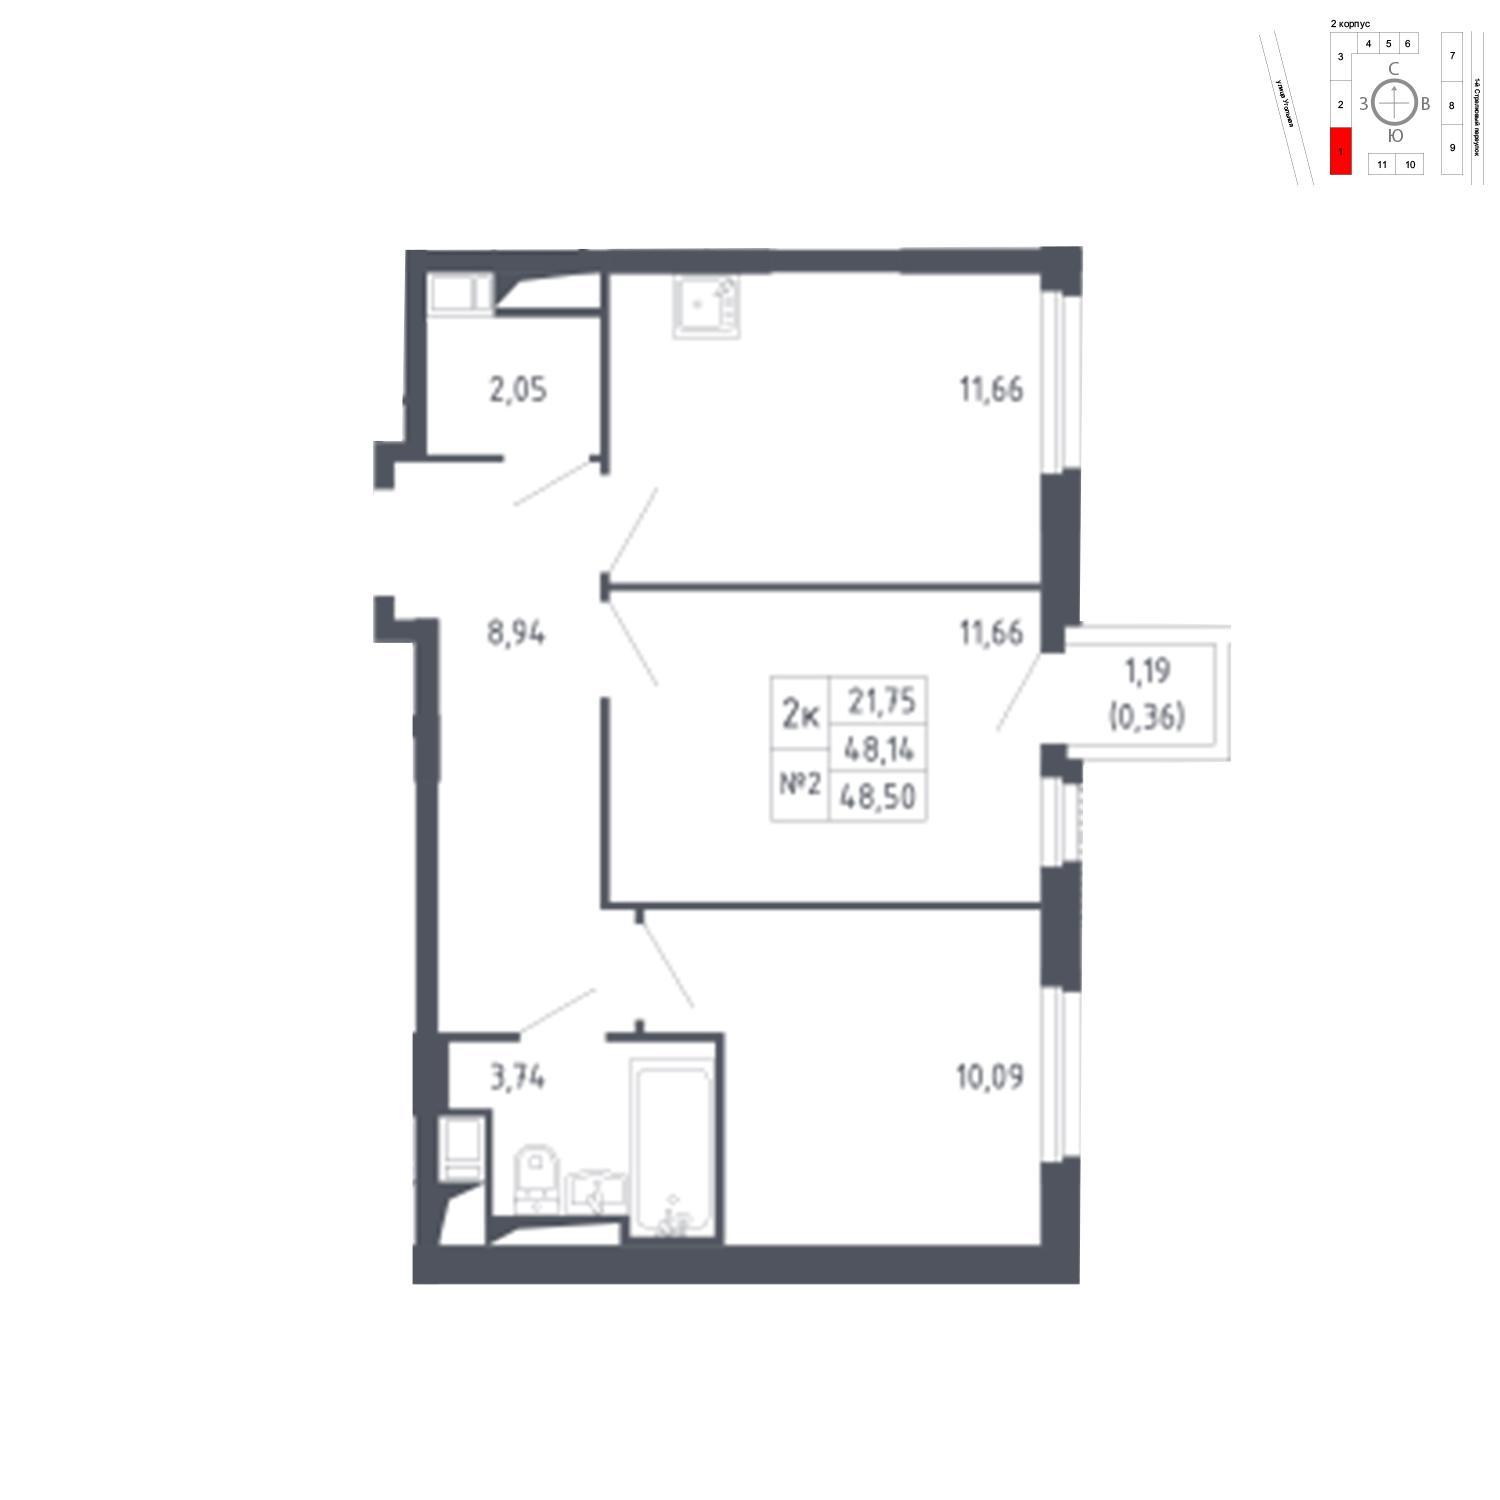 Продаётся 2-комнатная квартира в новостройке 48.5 кв.м. этаж 11/17 за 8 784 522 руб 